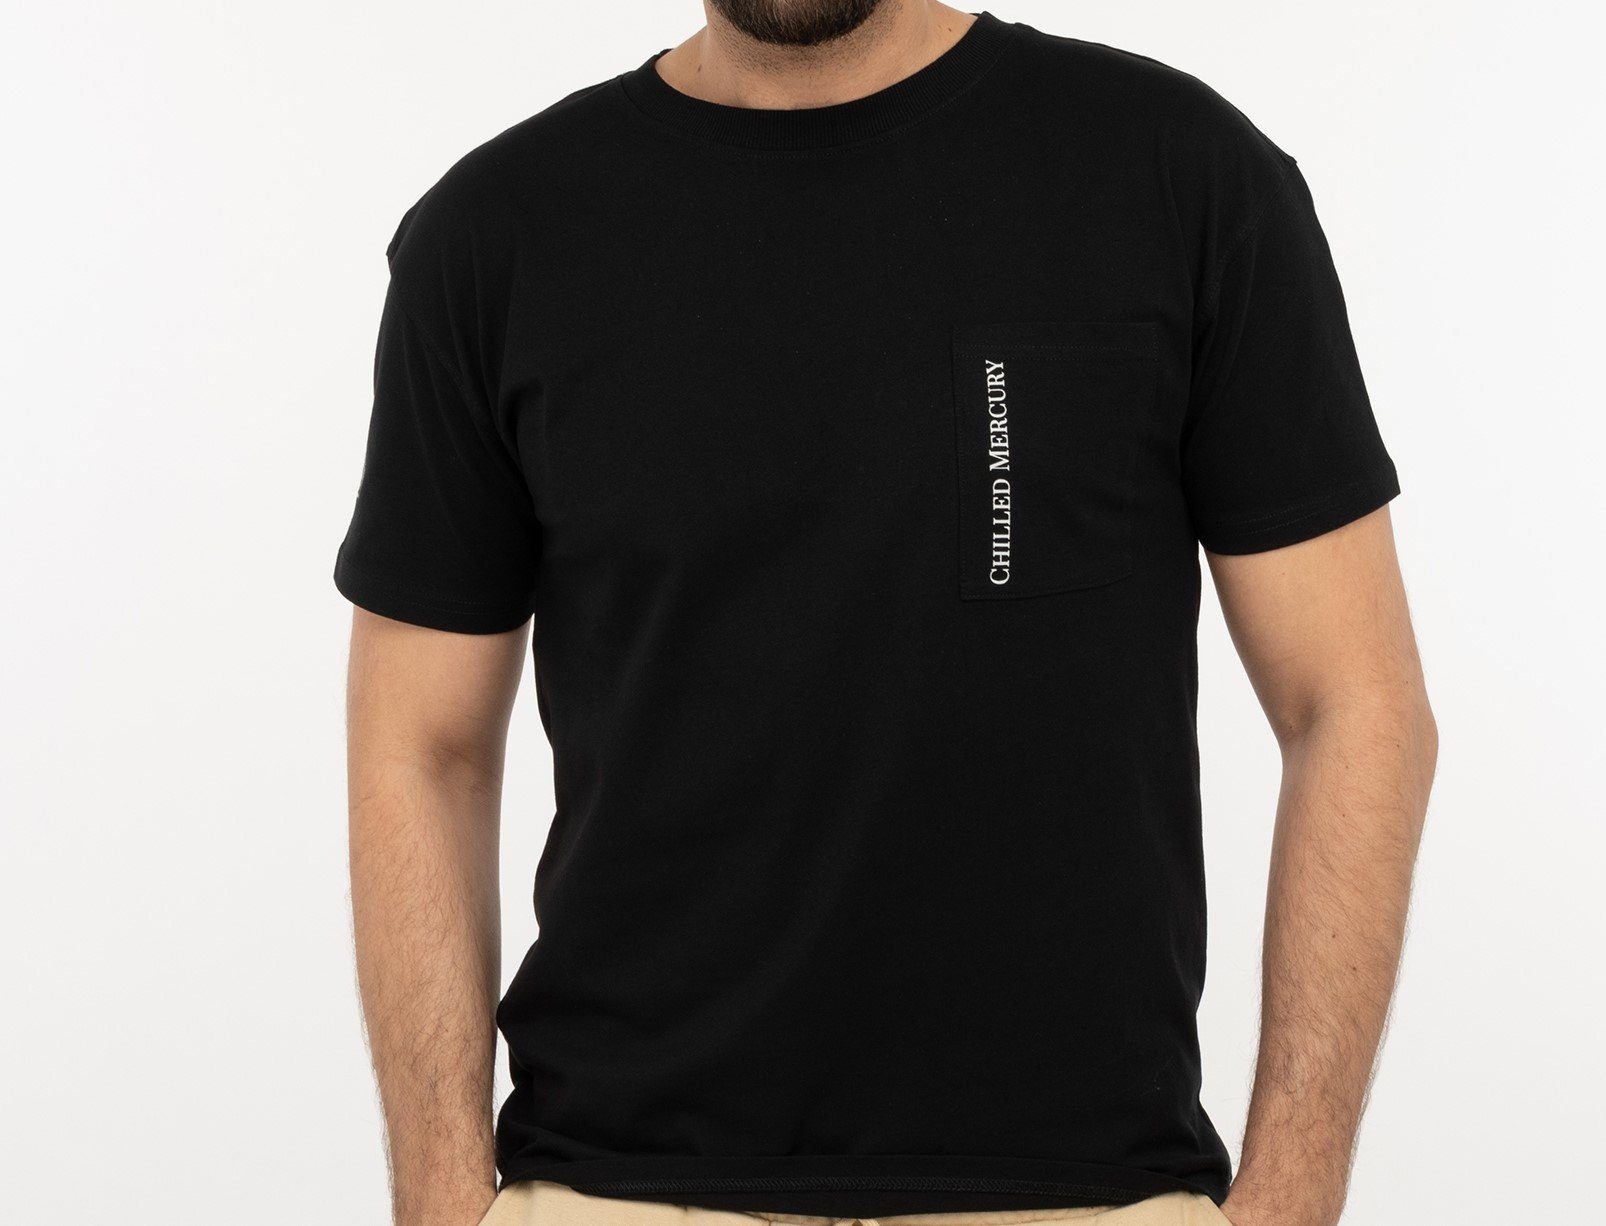 Chilled Mercury Rundhals Baumwolle Shirt/ T-Shirt Freizeit Brusttasche mit Schwarz